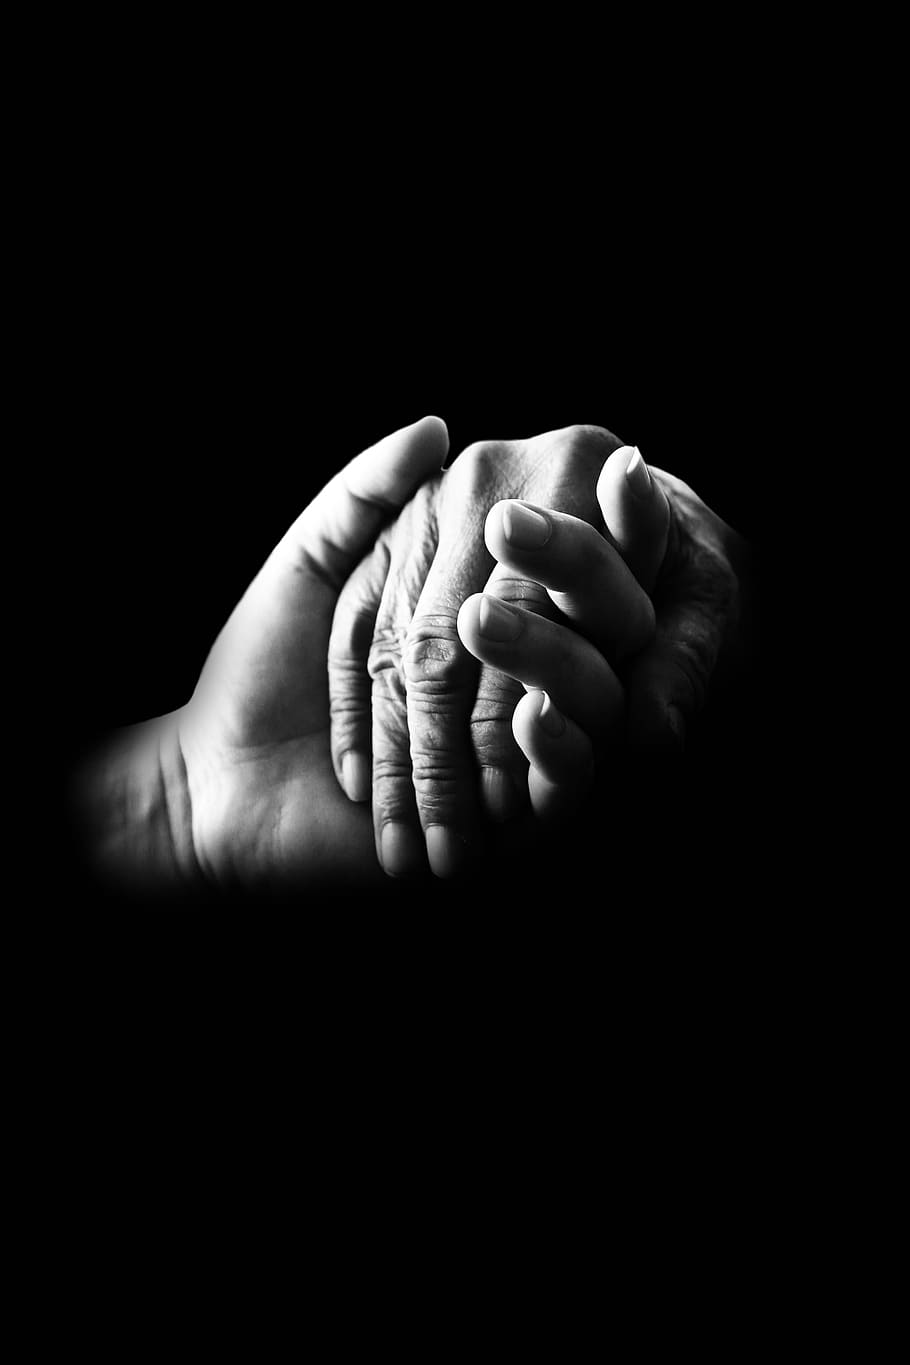 foto en escala de grises, dos, manos, tenencia, compasión, ayuda, viejo, cuidado, apoyo, asistencia